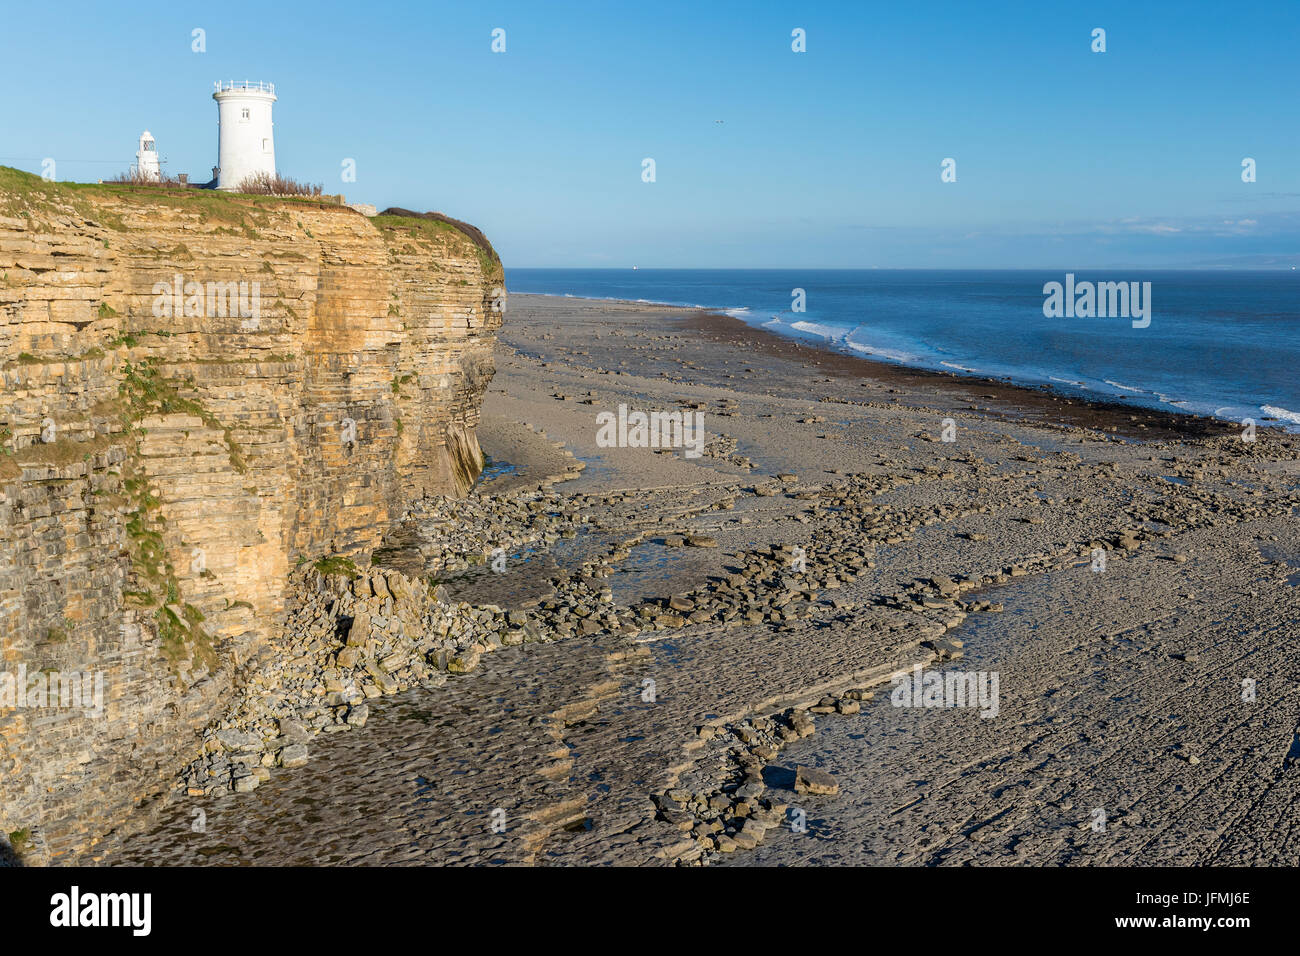 Nash Point, Monknash Coast of the Vale of Glamorgan, Wales, United Kingdom, Europe. Stock Photo